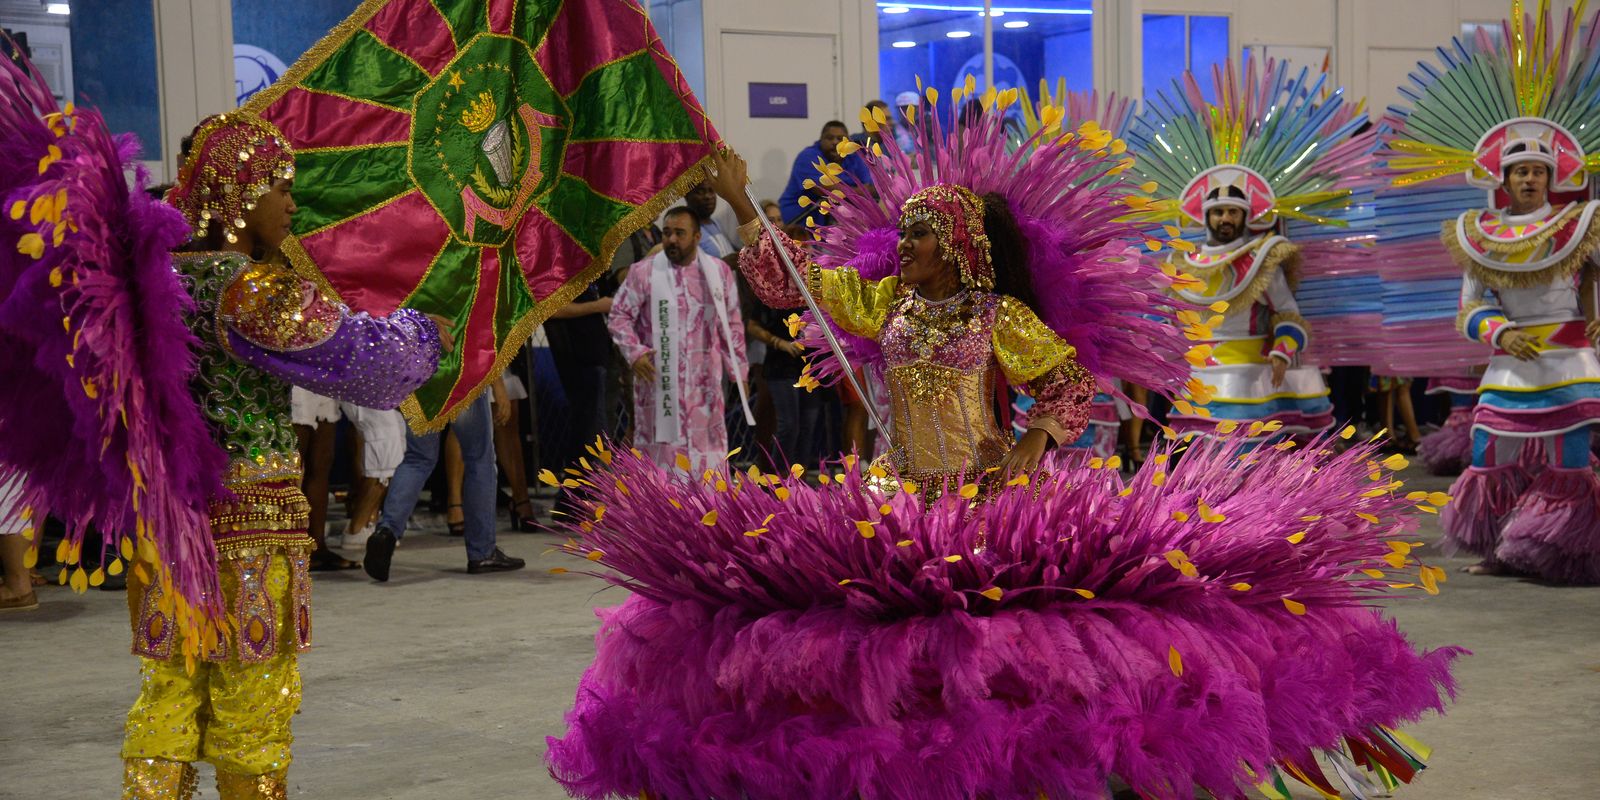 Stream Carnaval en Brasil con Escola do Samba